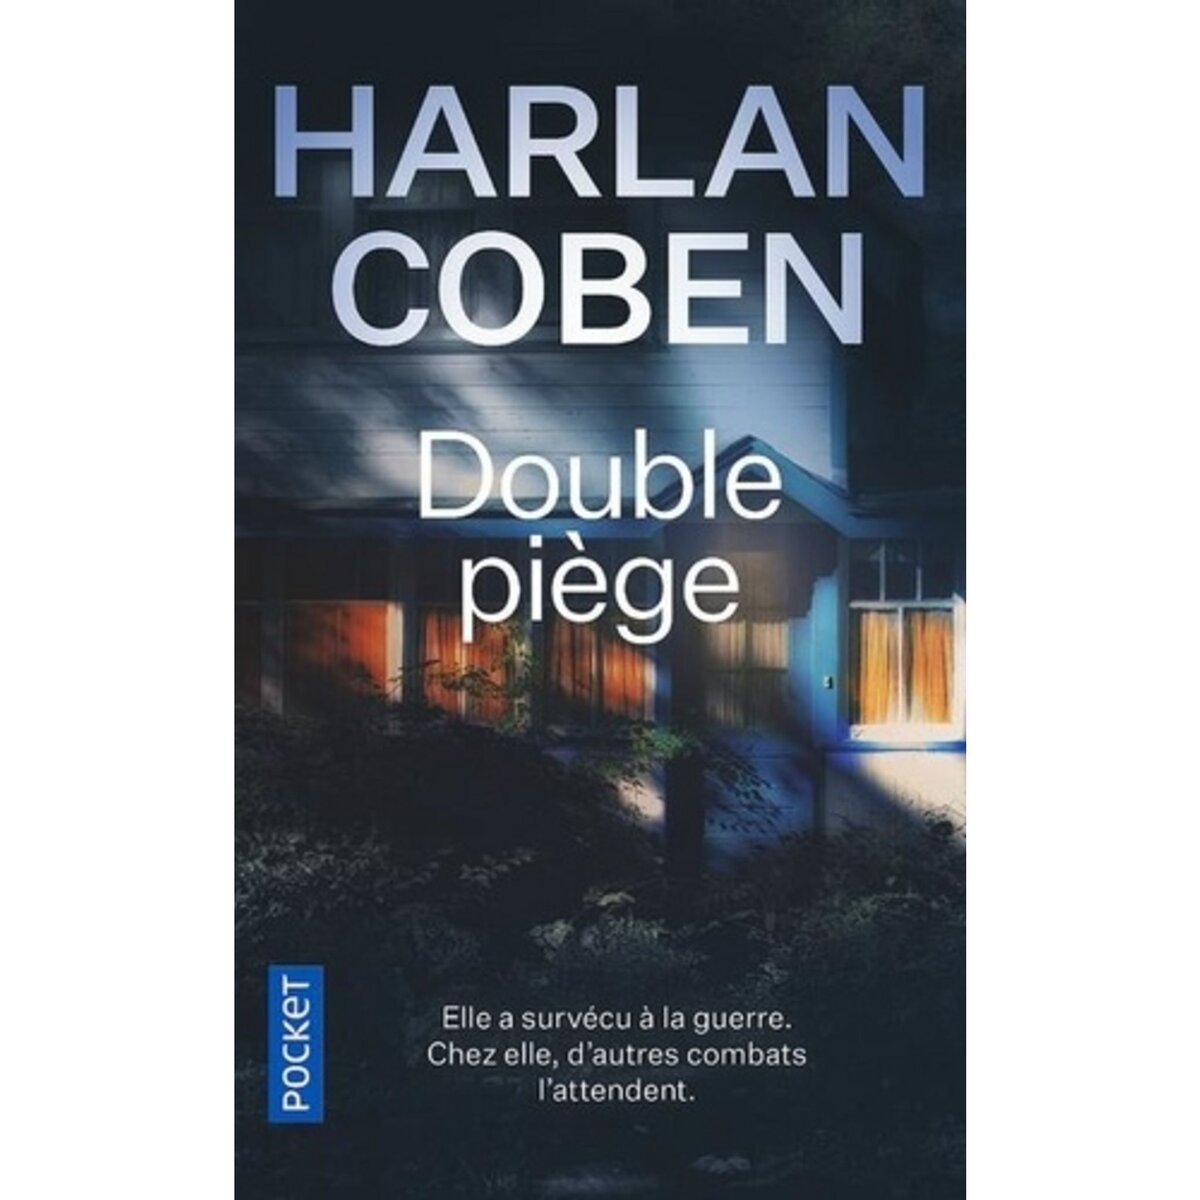 HARLAN COBEN DOUBLE Piège - Livre broché en très bon état EUR 8,00 -  PicClick FR